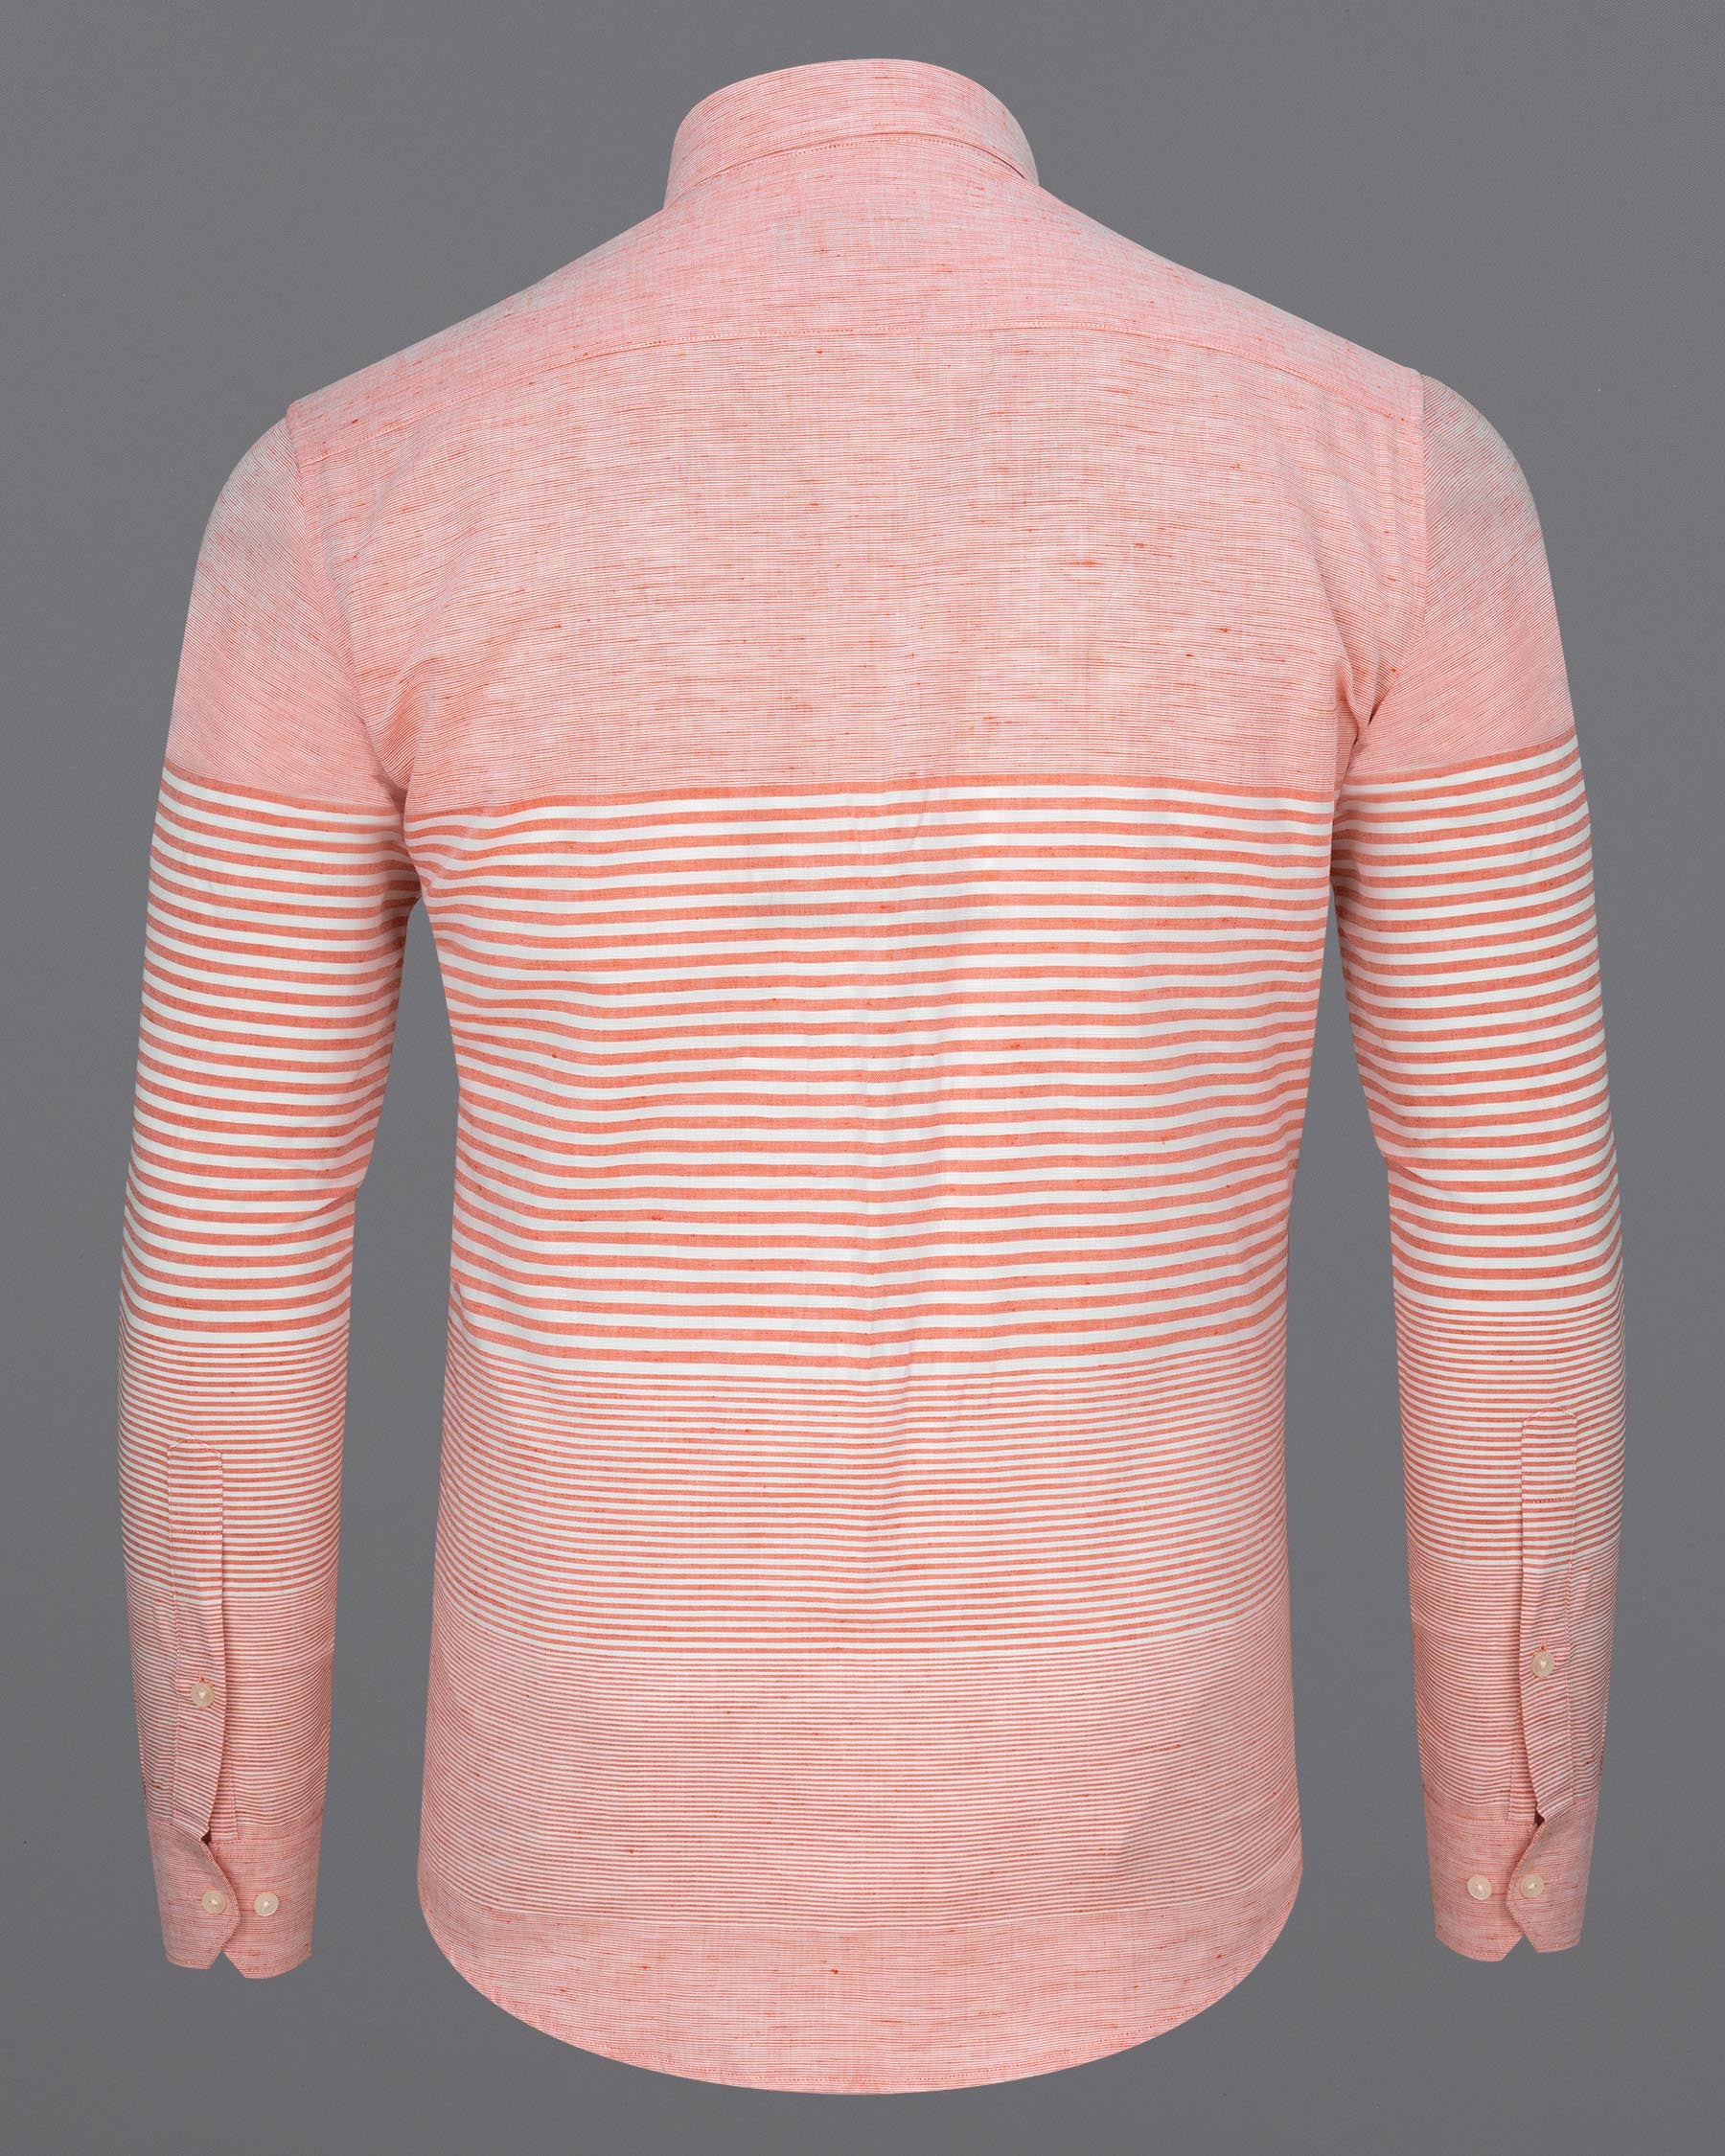 Blush Peach and White Striped Luxurious Linen Shirt  6837-38,6837-38,6837-39,6837-39,6837-40,6837-40,6837-42,6837-42,6837-44,6837-44,6837-46,6837-46,6837-48,6837-48,6837-50,6837-50,6837-52,6837-52